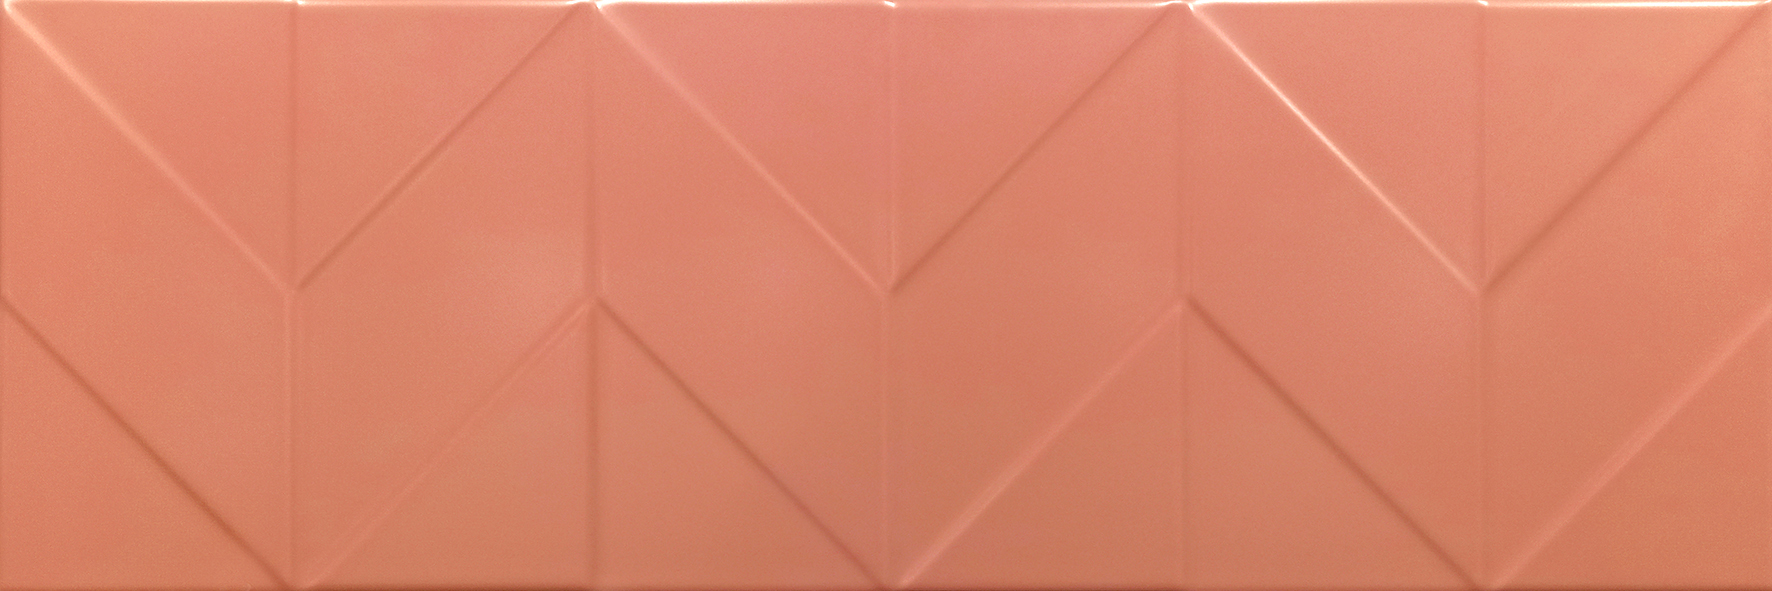 картинка Керамическая плитка Танага 6Д 750*250 оранжевый от Керамин-Нева (керамическая плитка, керамогранит)